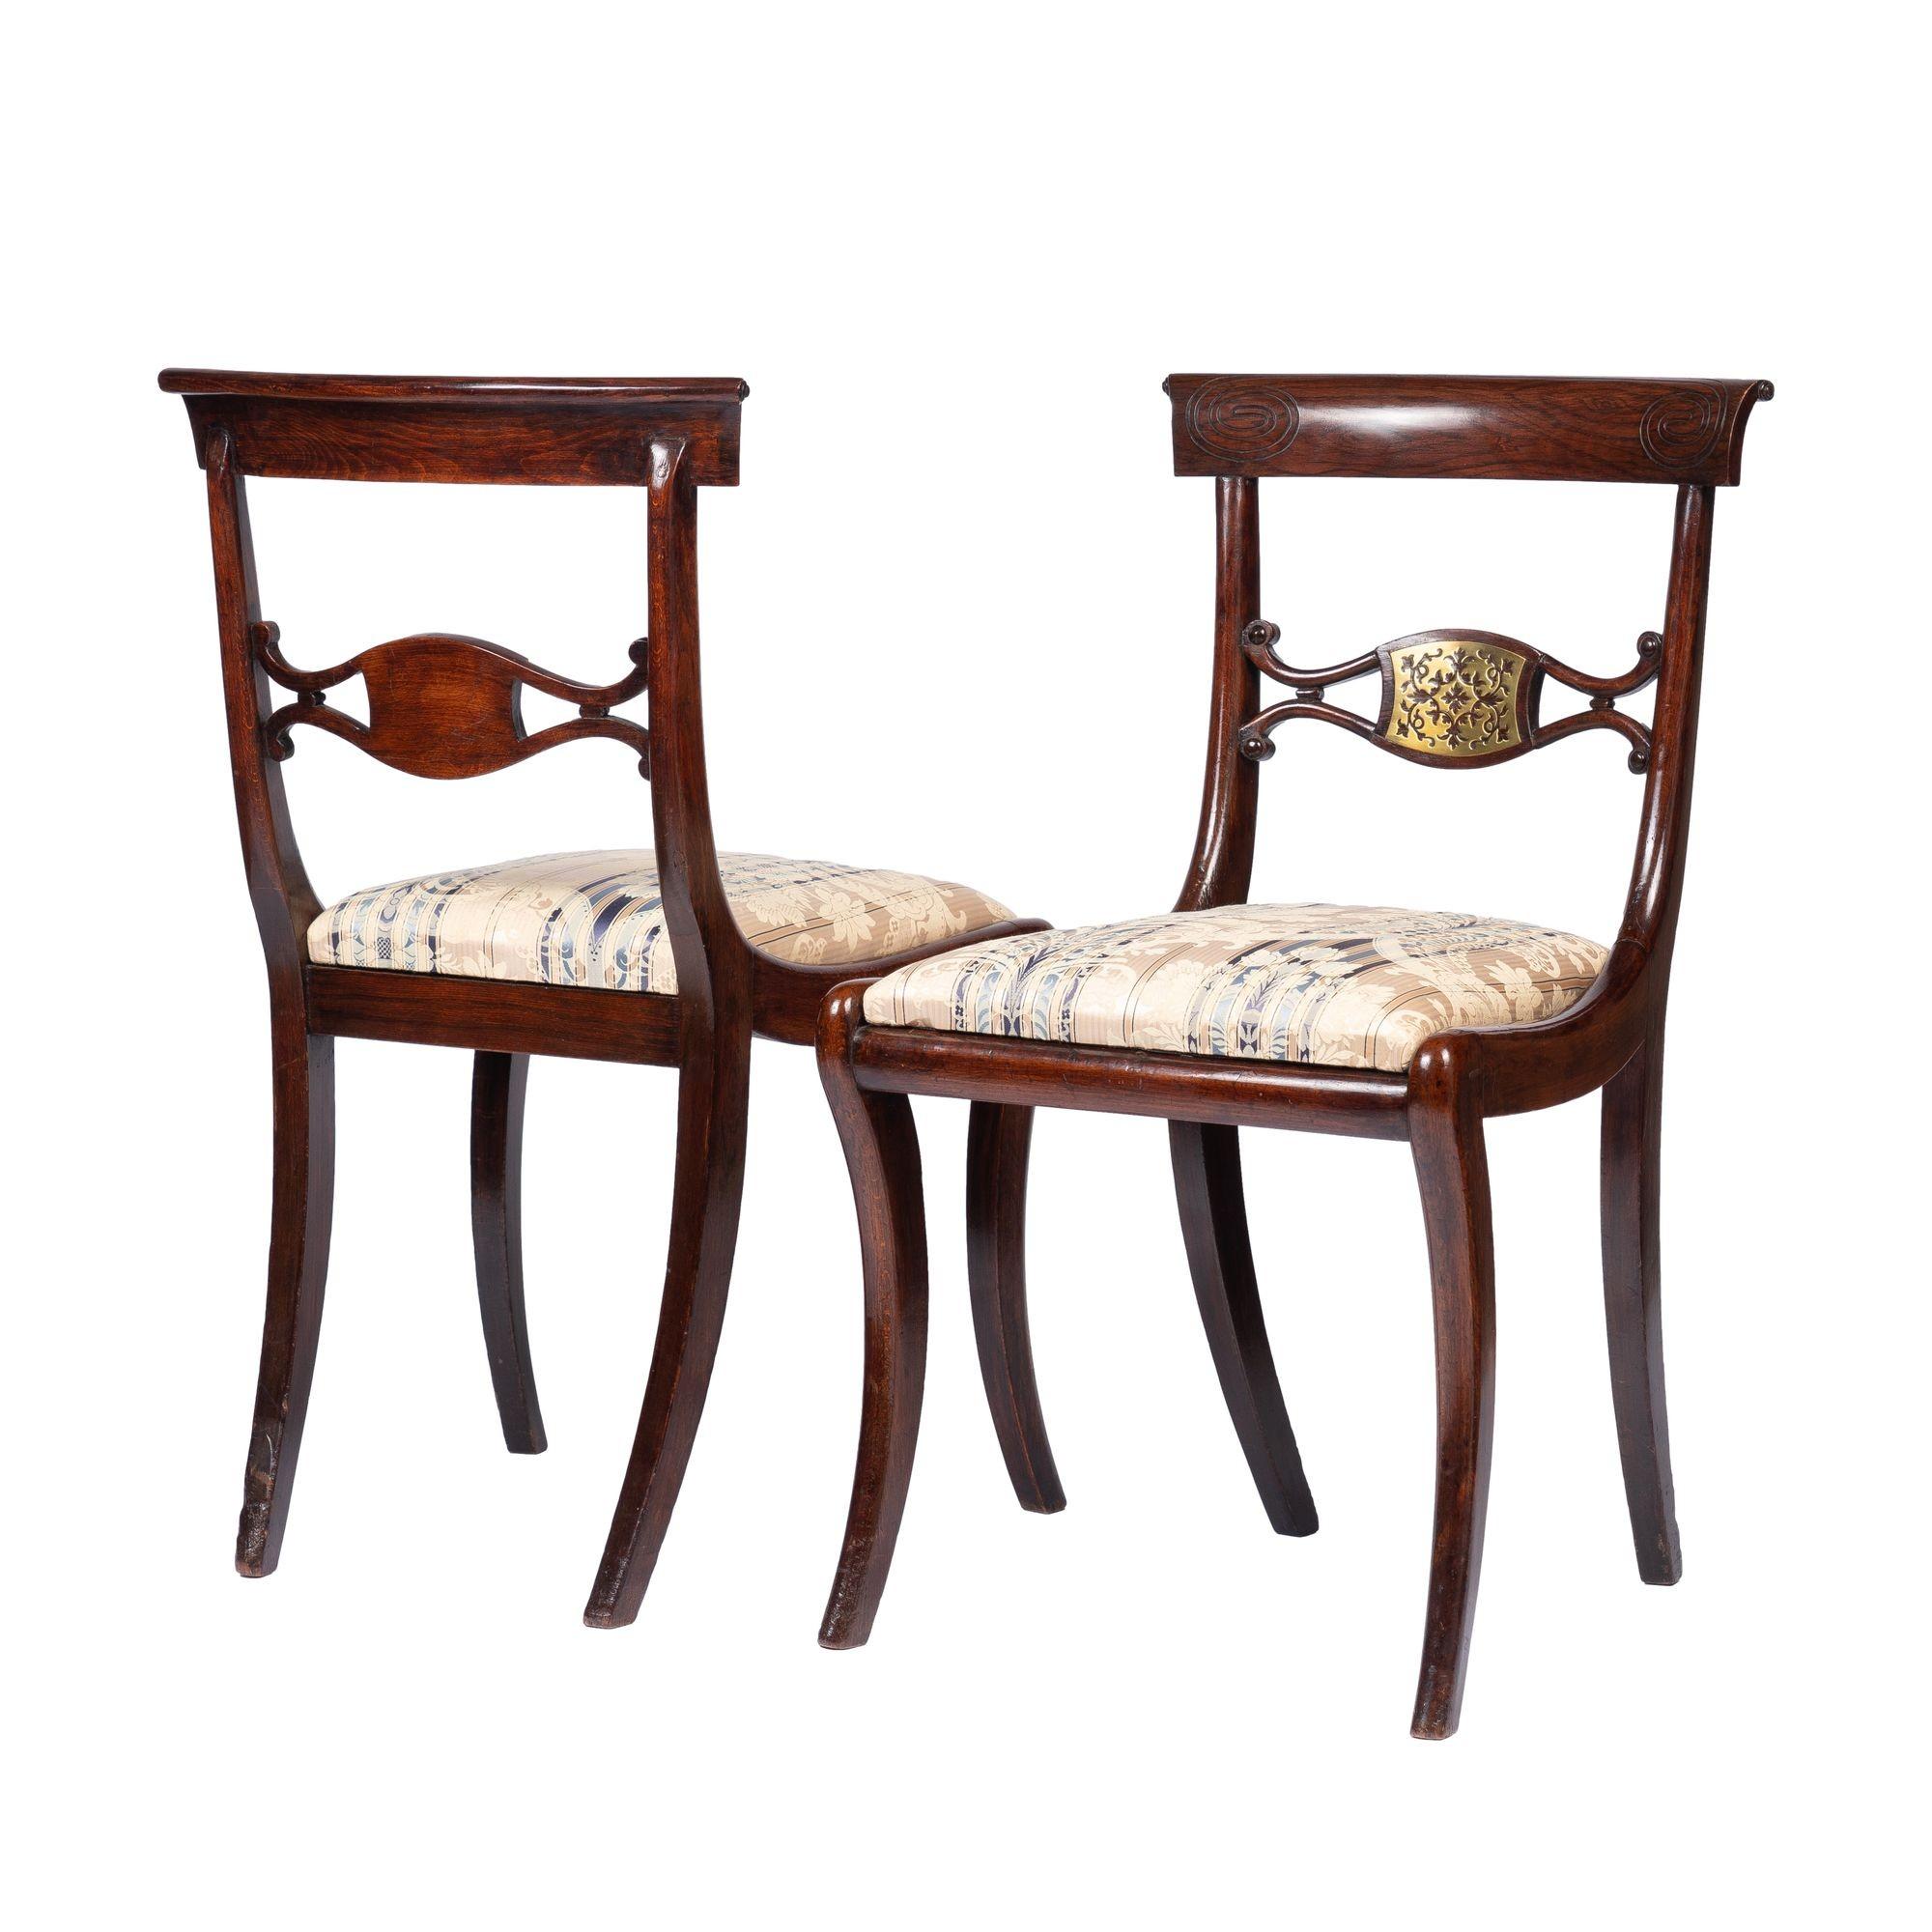 Paire de chaises d'appoint Klismos en faux bois de rose peint, d'époque Régence anglaise, incrustées d'ornements en laiton percé au centre de la traverse du dossier et aux coins de la traverse de la crête. Les chaises sont équipées de sièges